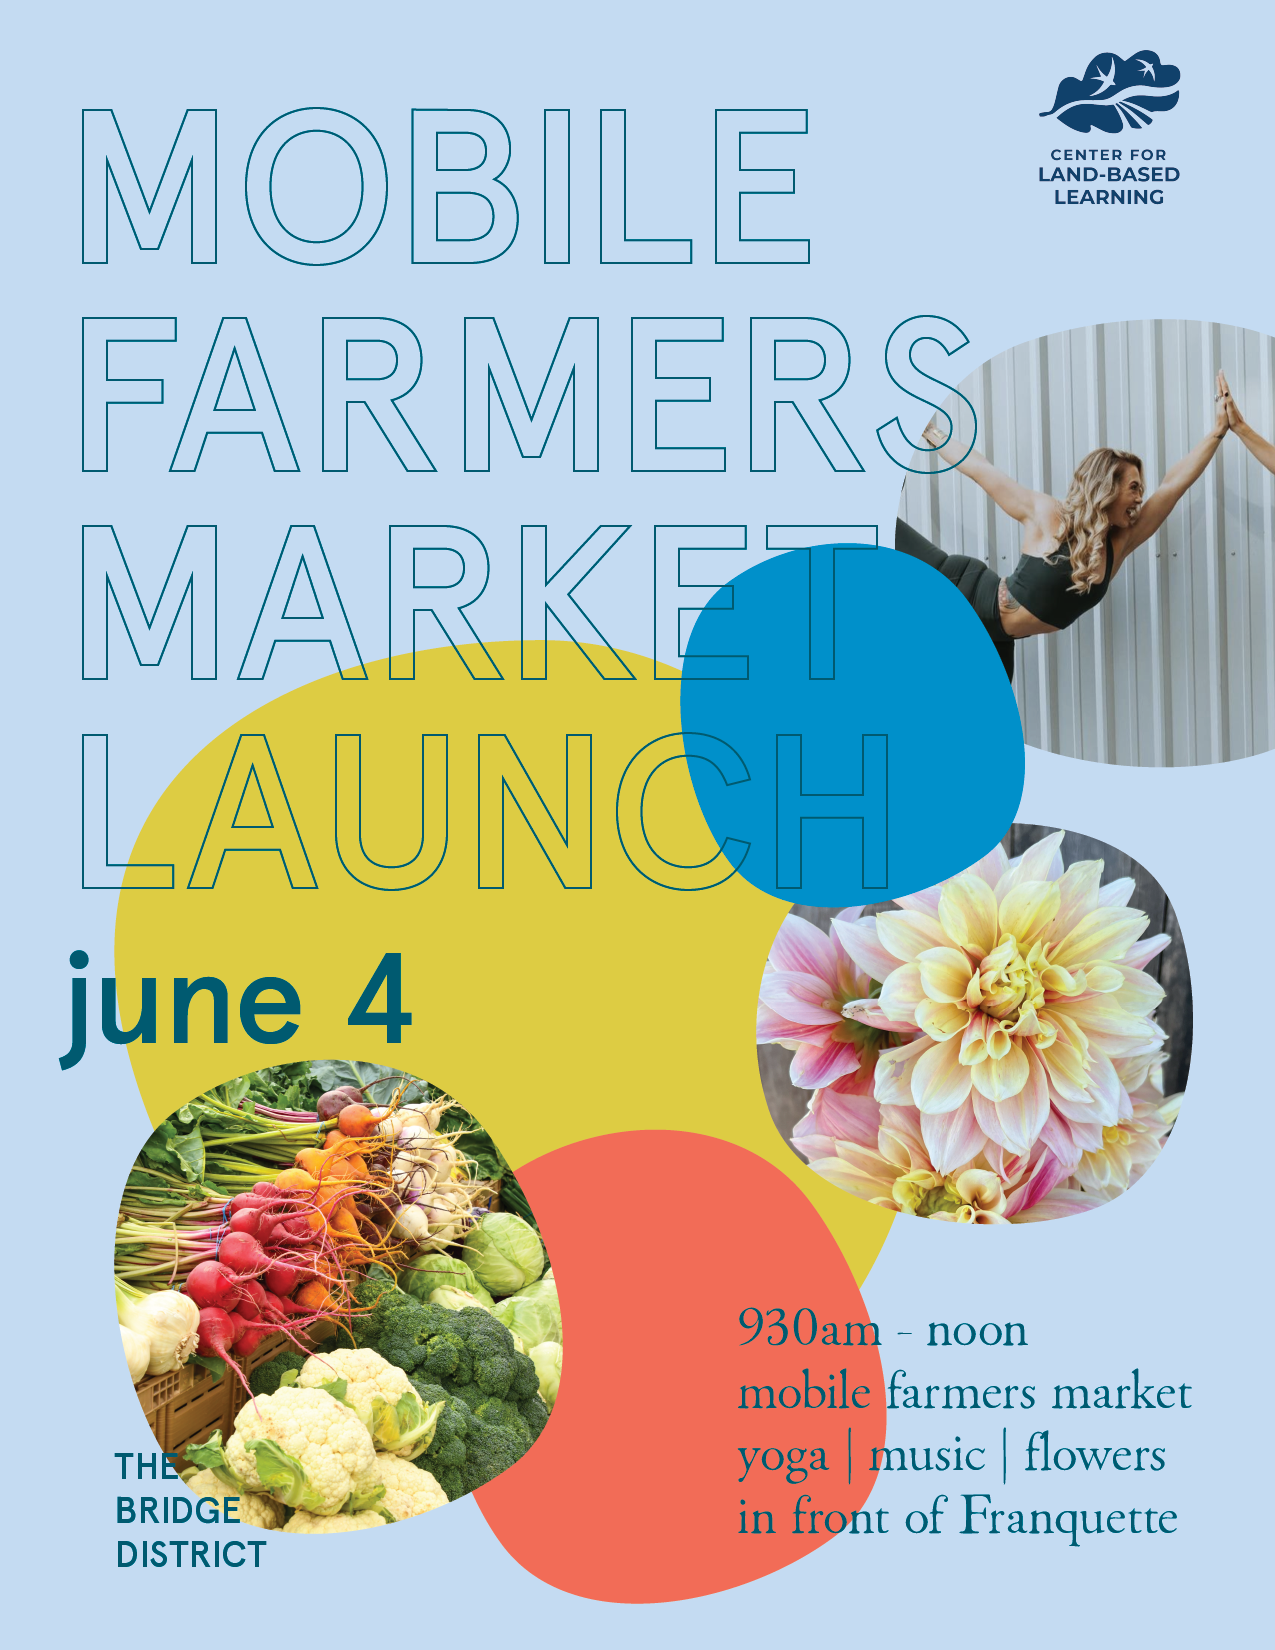 Mobile Market Launch